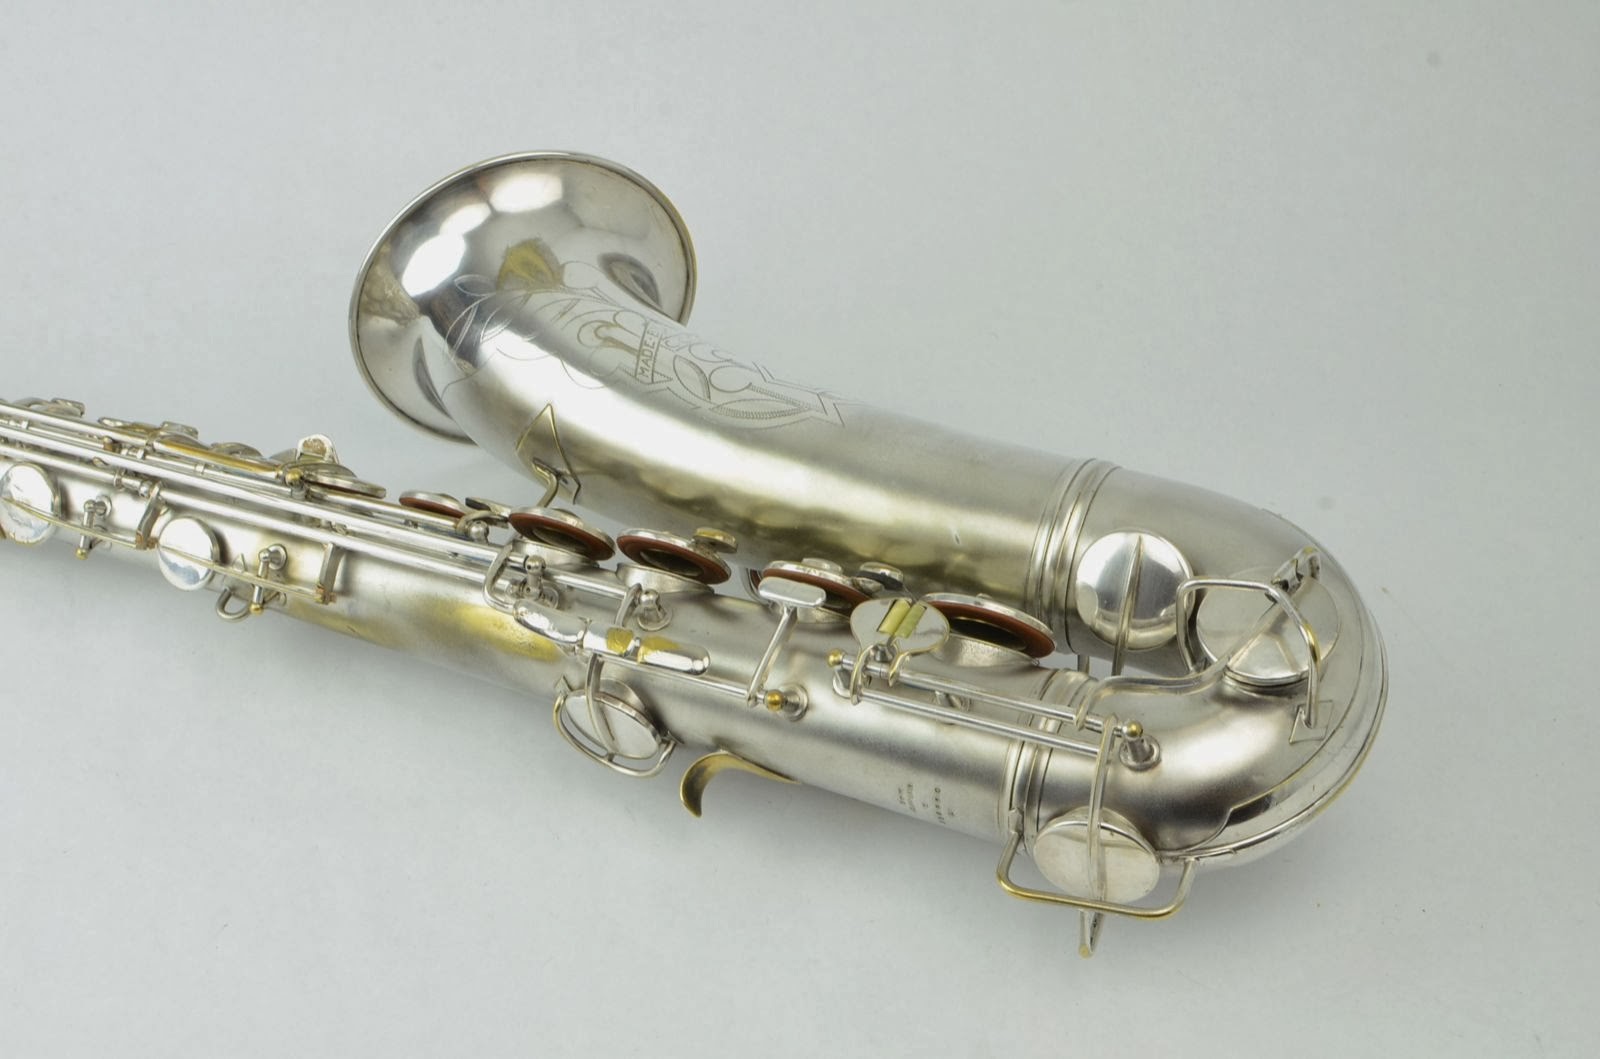 buescher true tone alto saxophone serial numbers